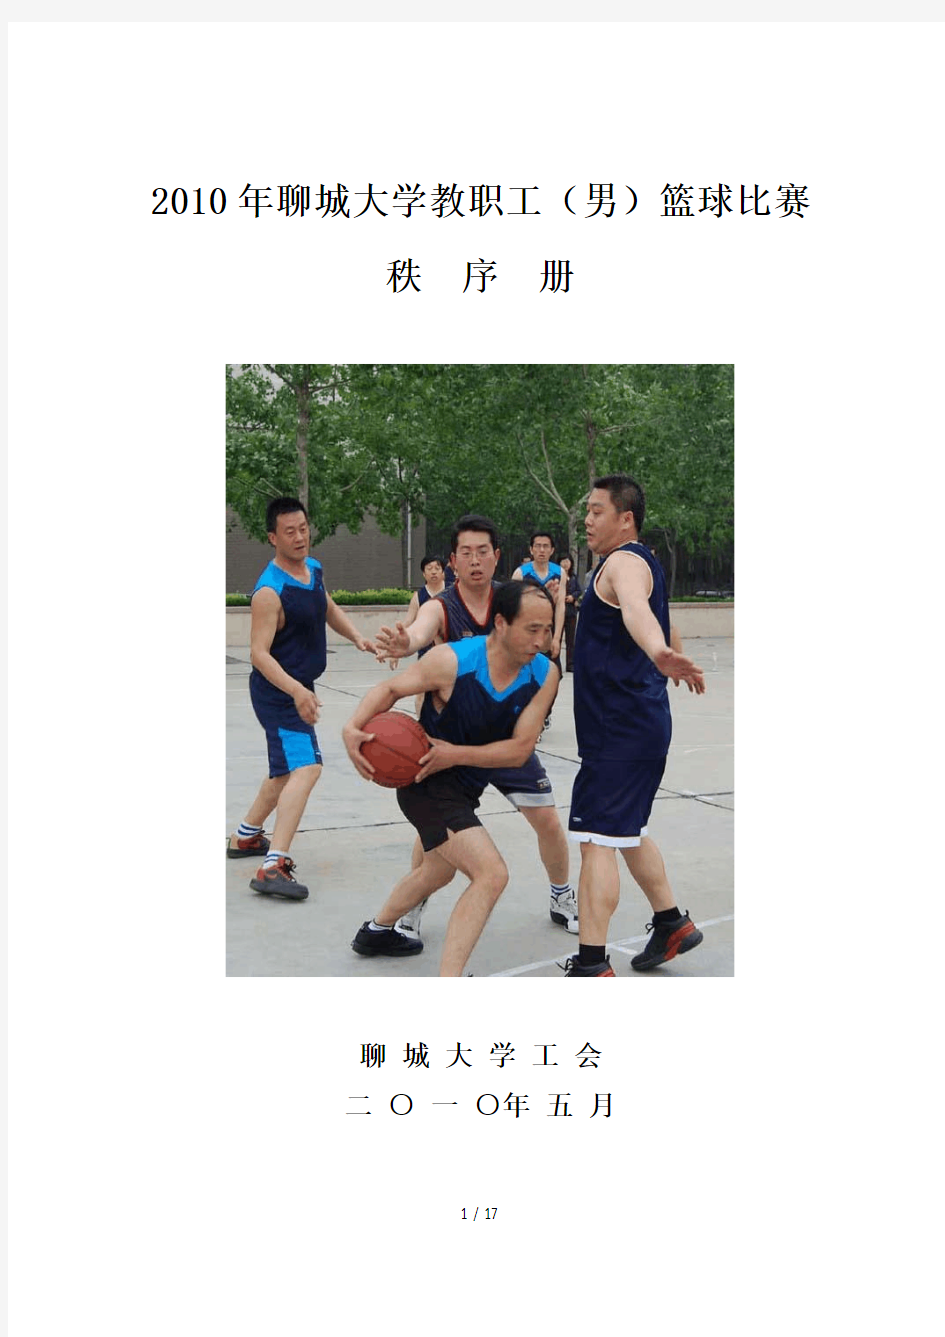 聊城大学教职工(男)篮球比赛